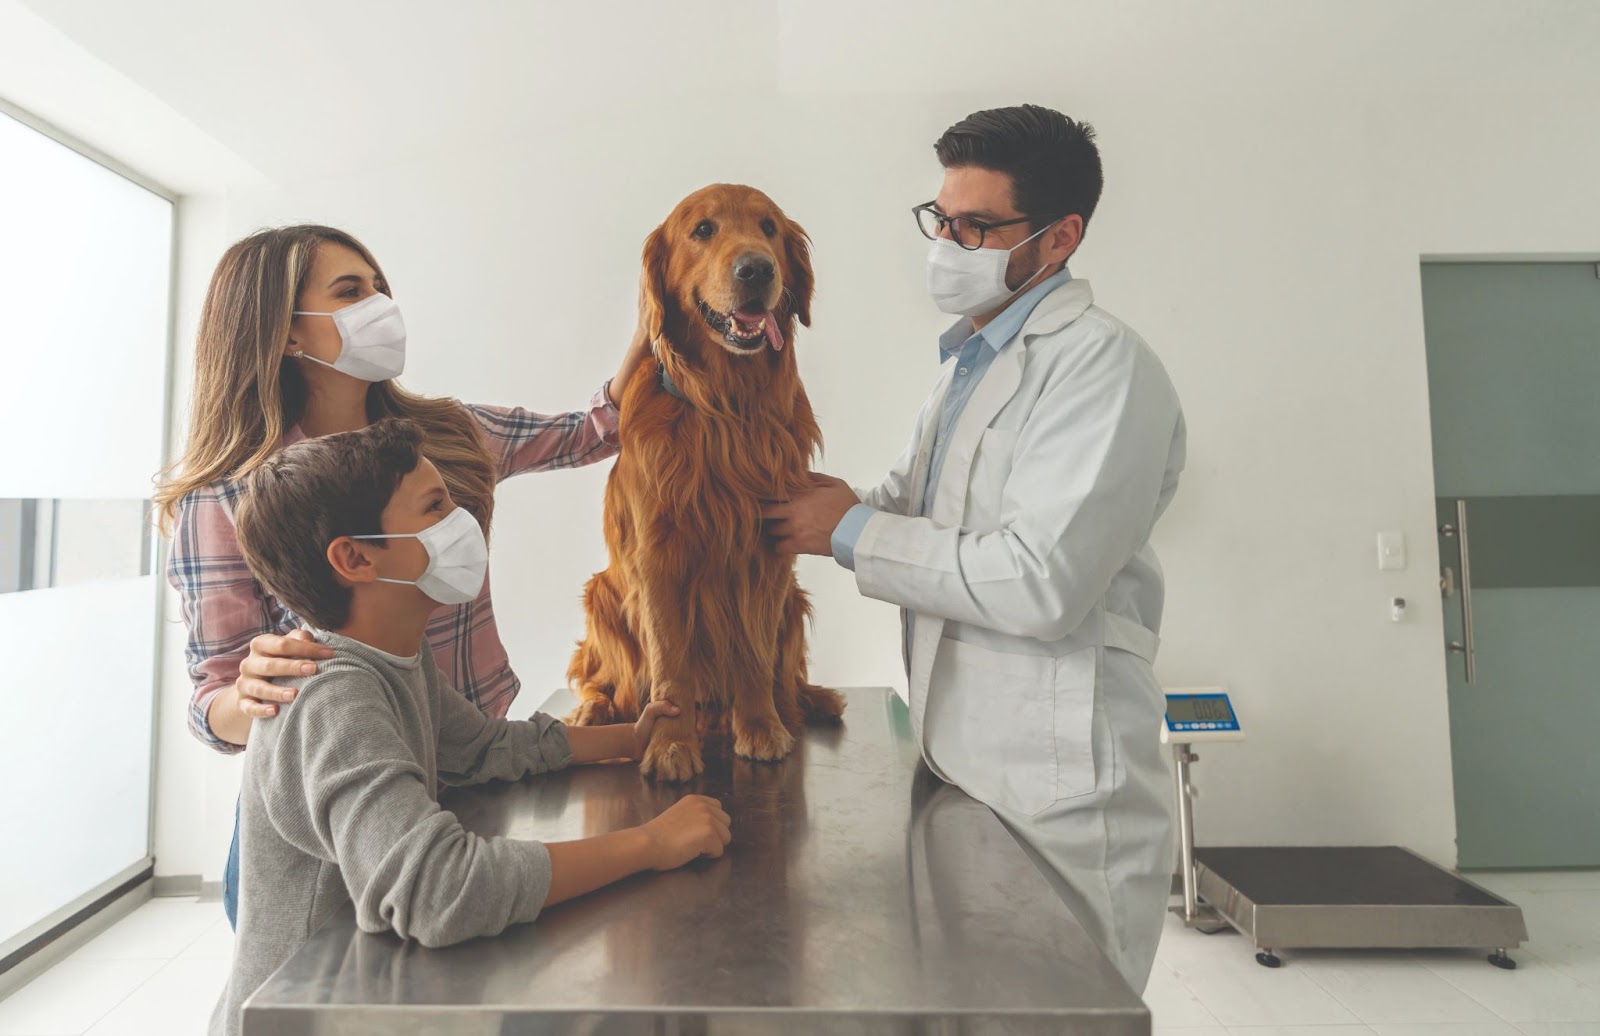 ветеринар осматривает собаку